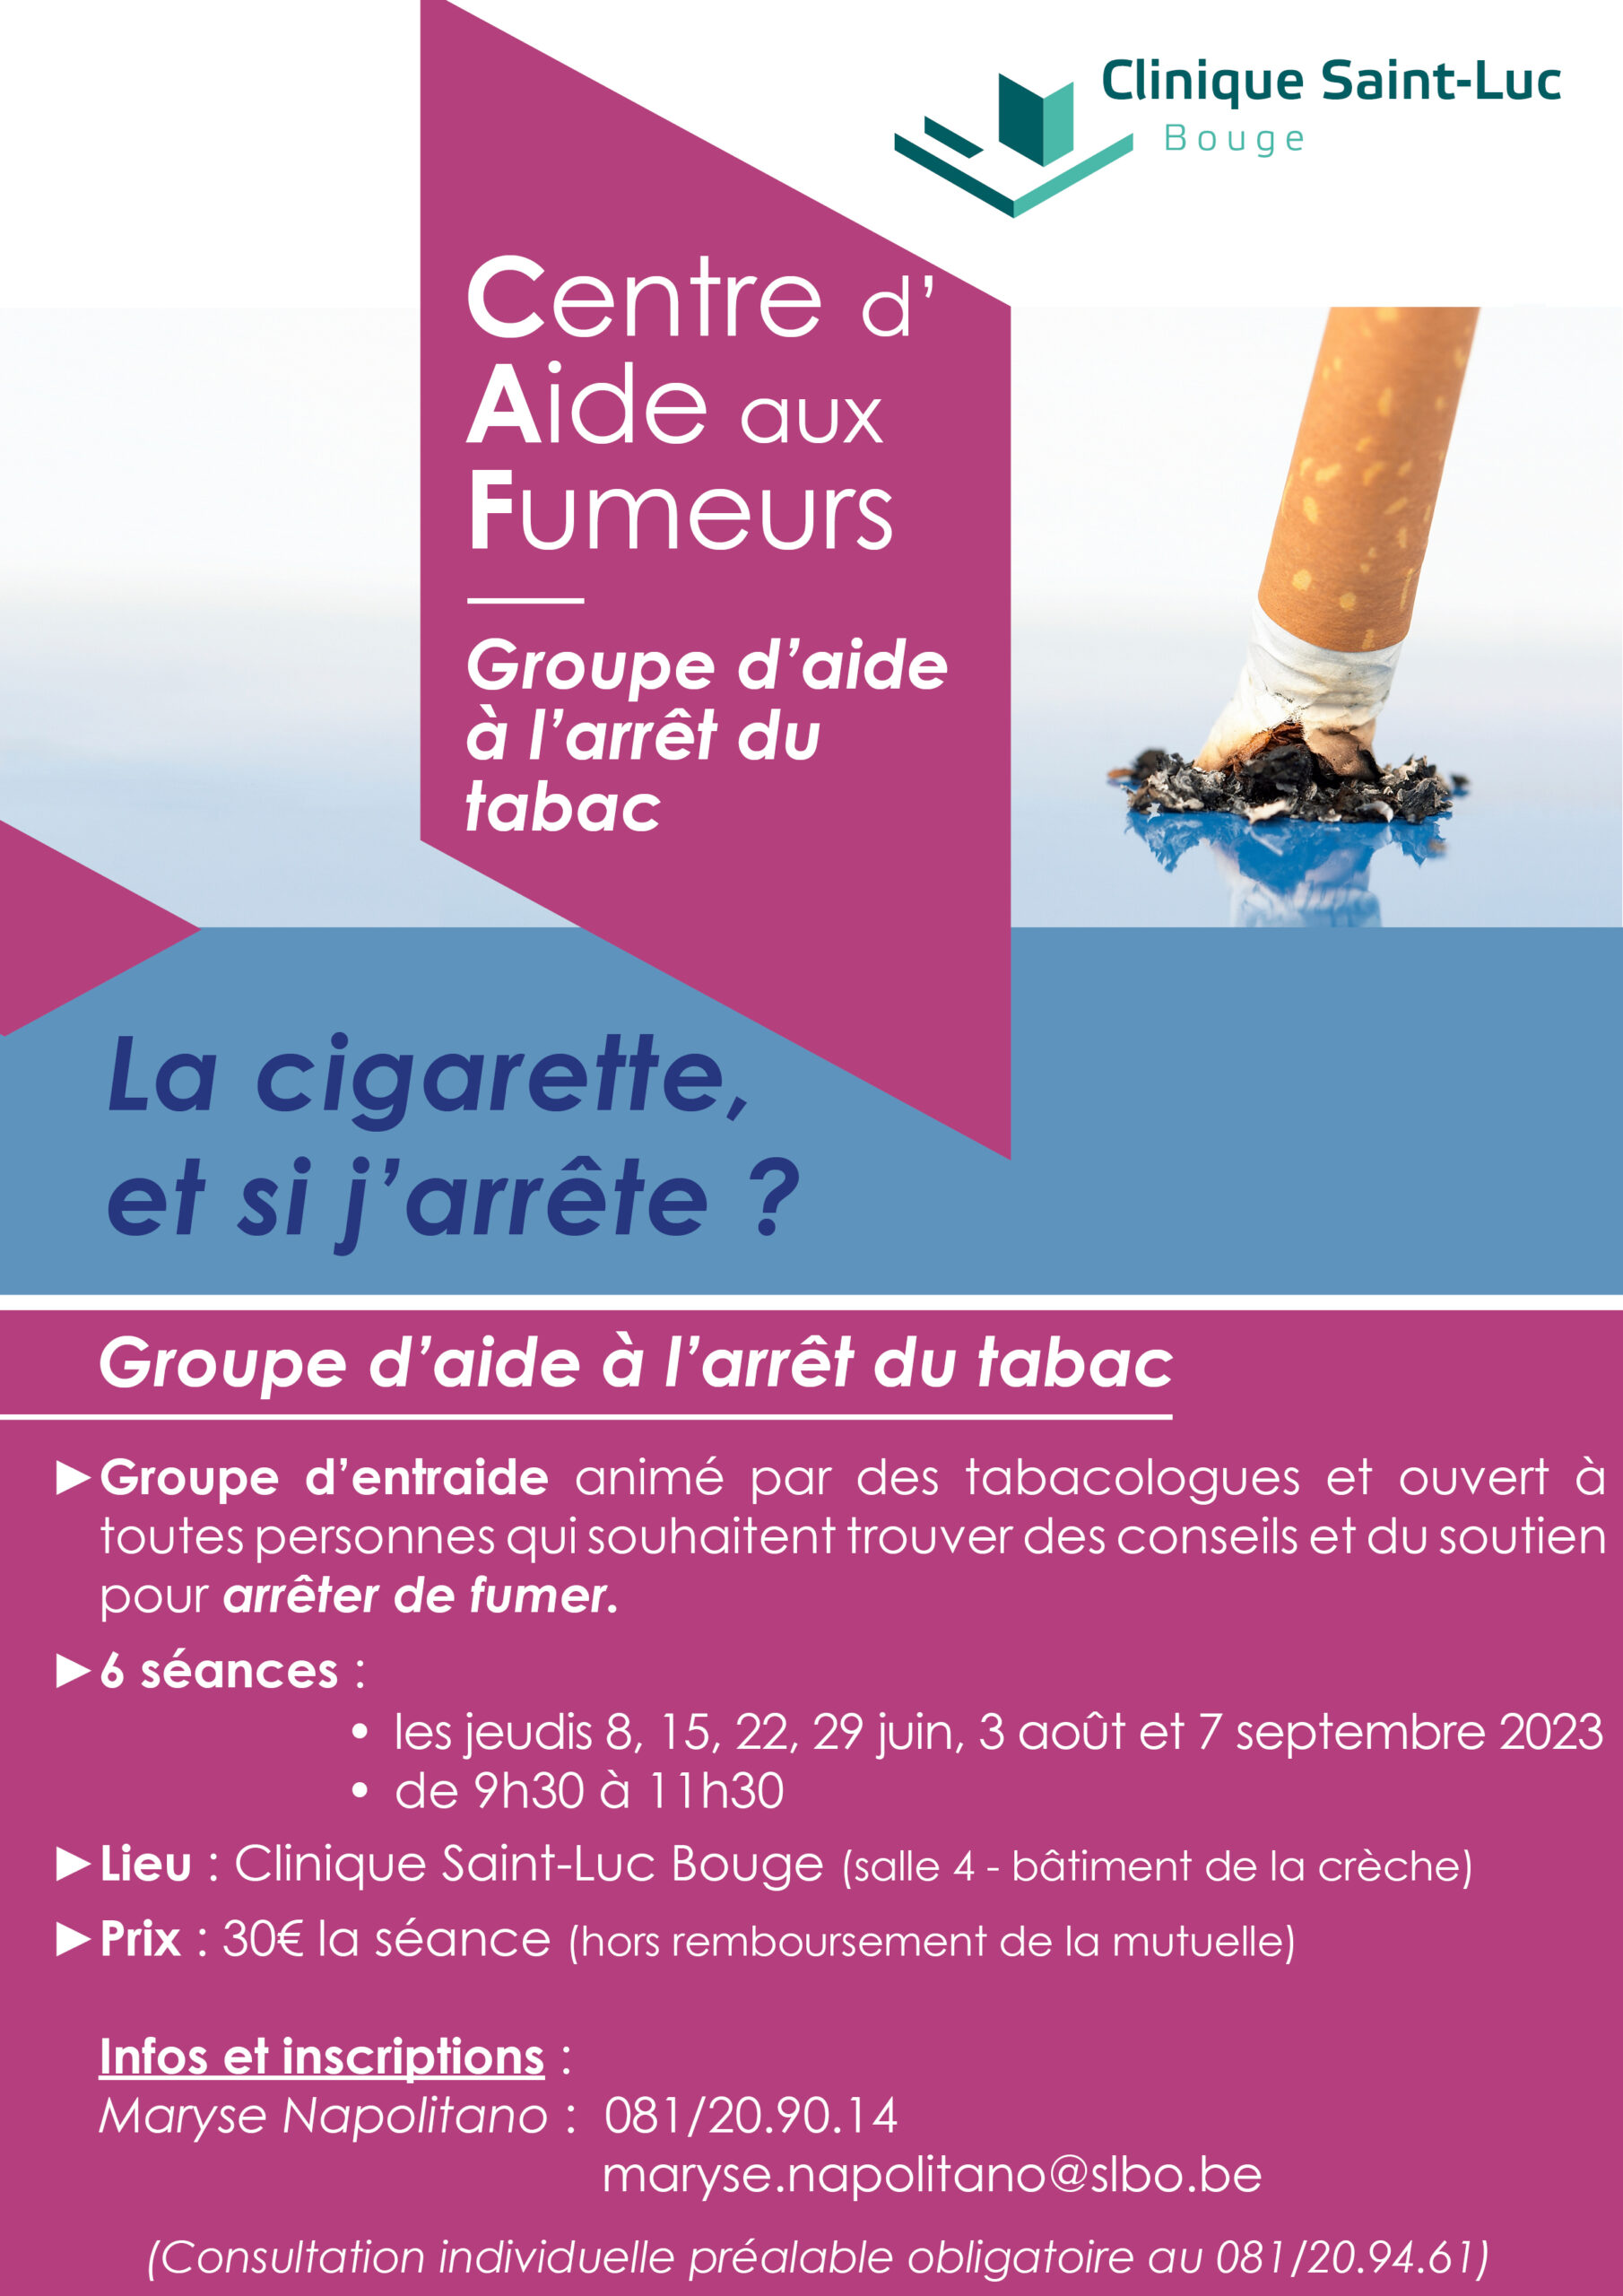 Groupe d'aide à l'arrêt du tabac à la Clinique Saint-Luc Bouge